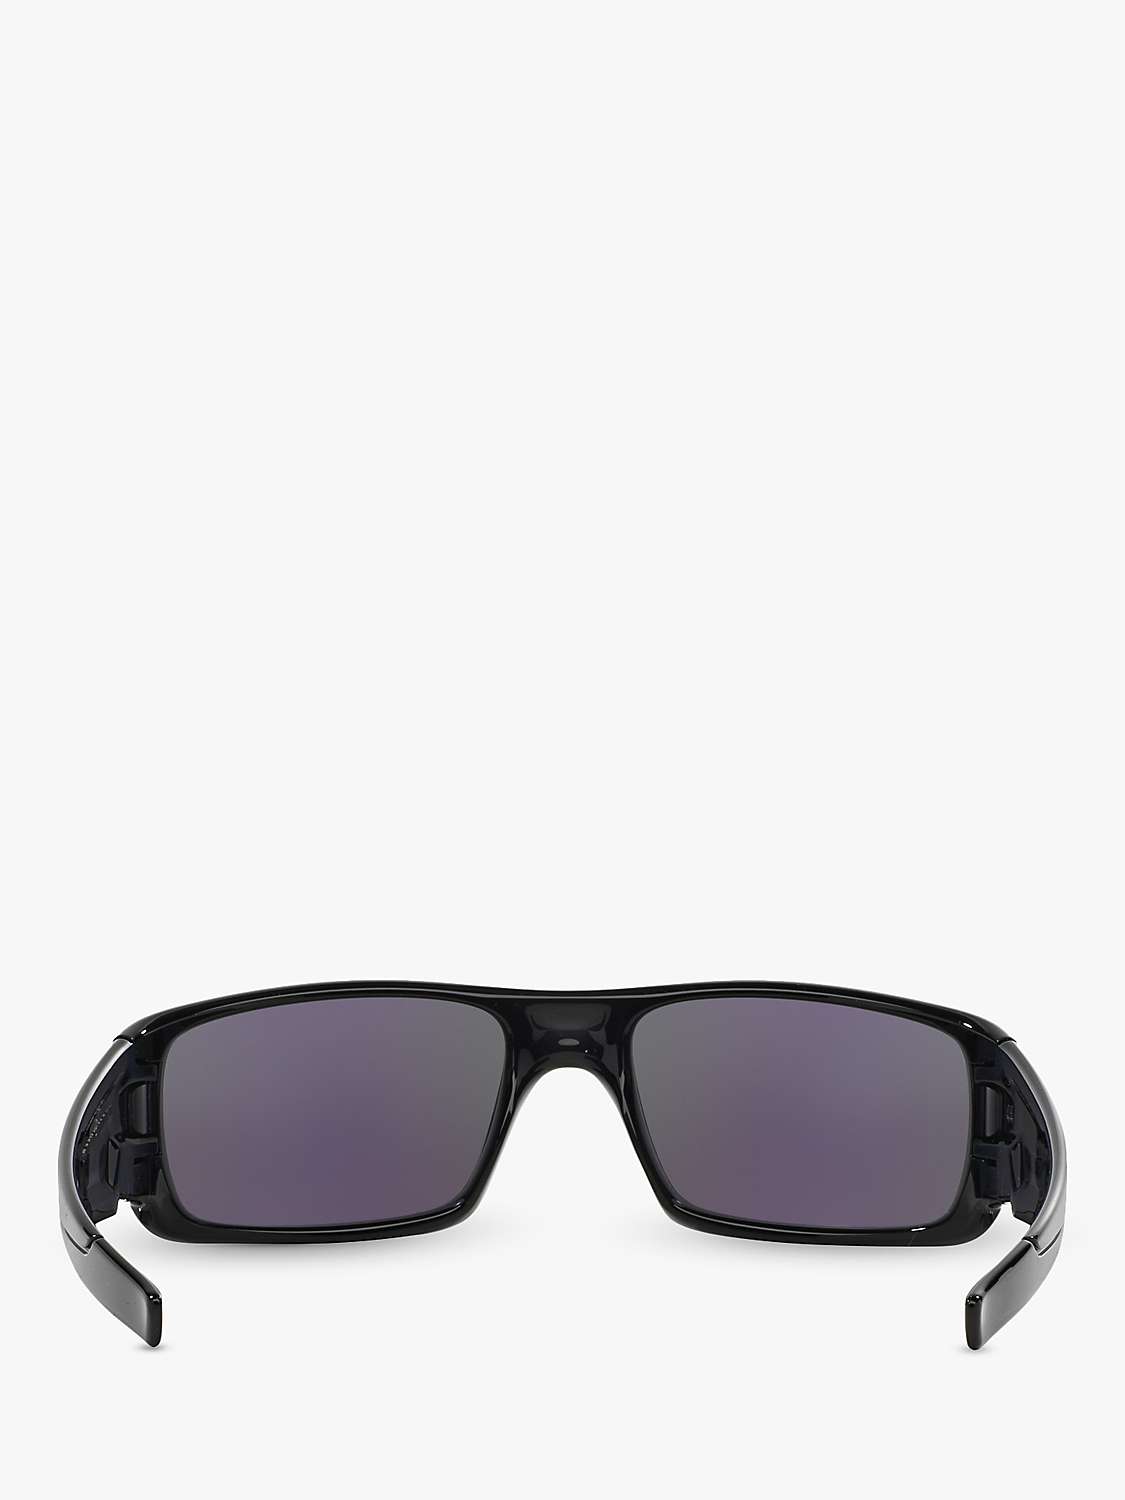 Buy Oakley OO9239 Men's Crankshaft Rectangular Sunglasses, Black Ink/Mirror Green Online at johnlewis.com